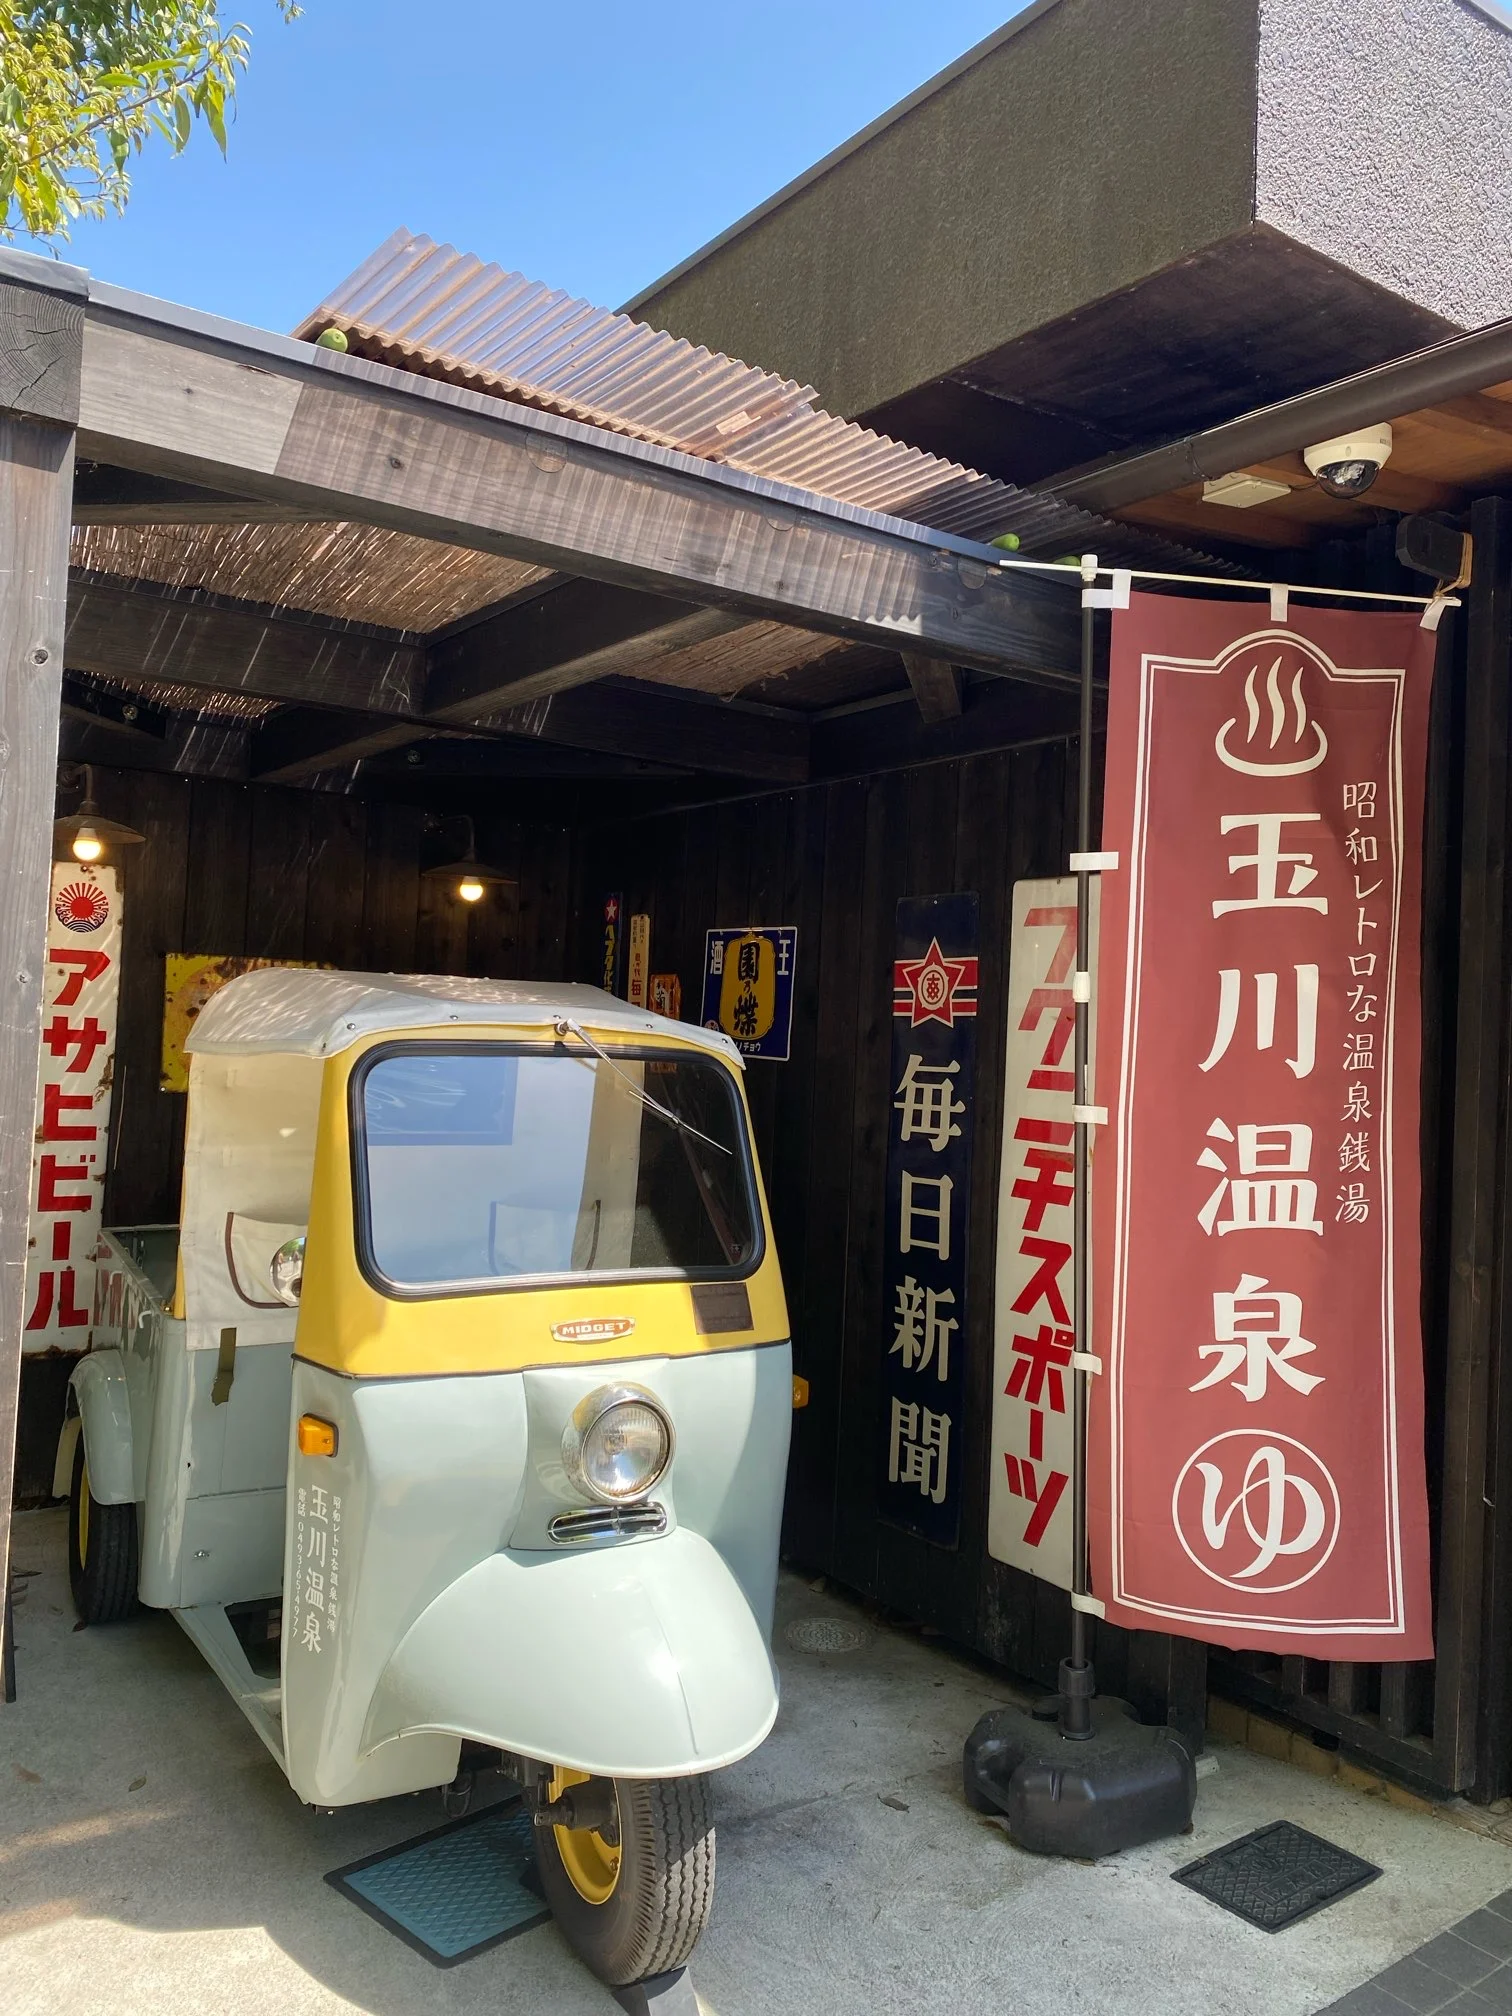 関東 昭和レトロな温泉銭湯で懐かしの給食が食べられる Moreインフルエンサーズブログ More